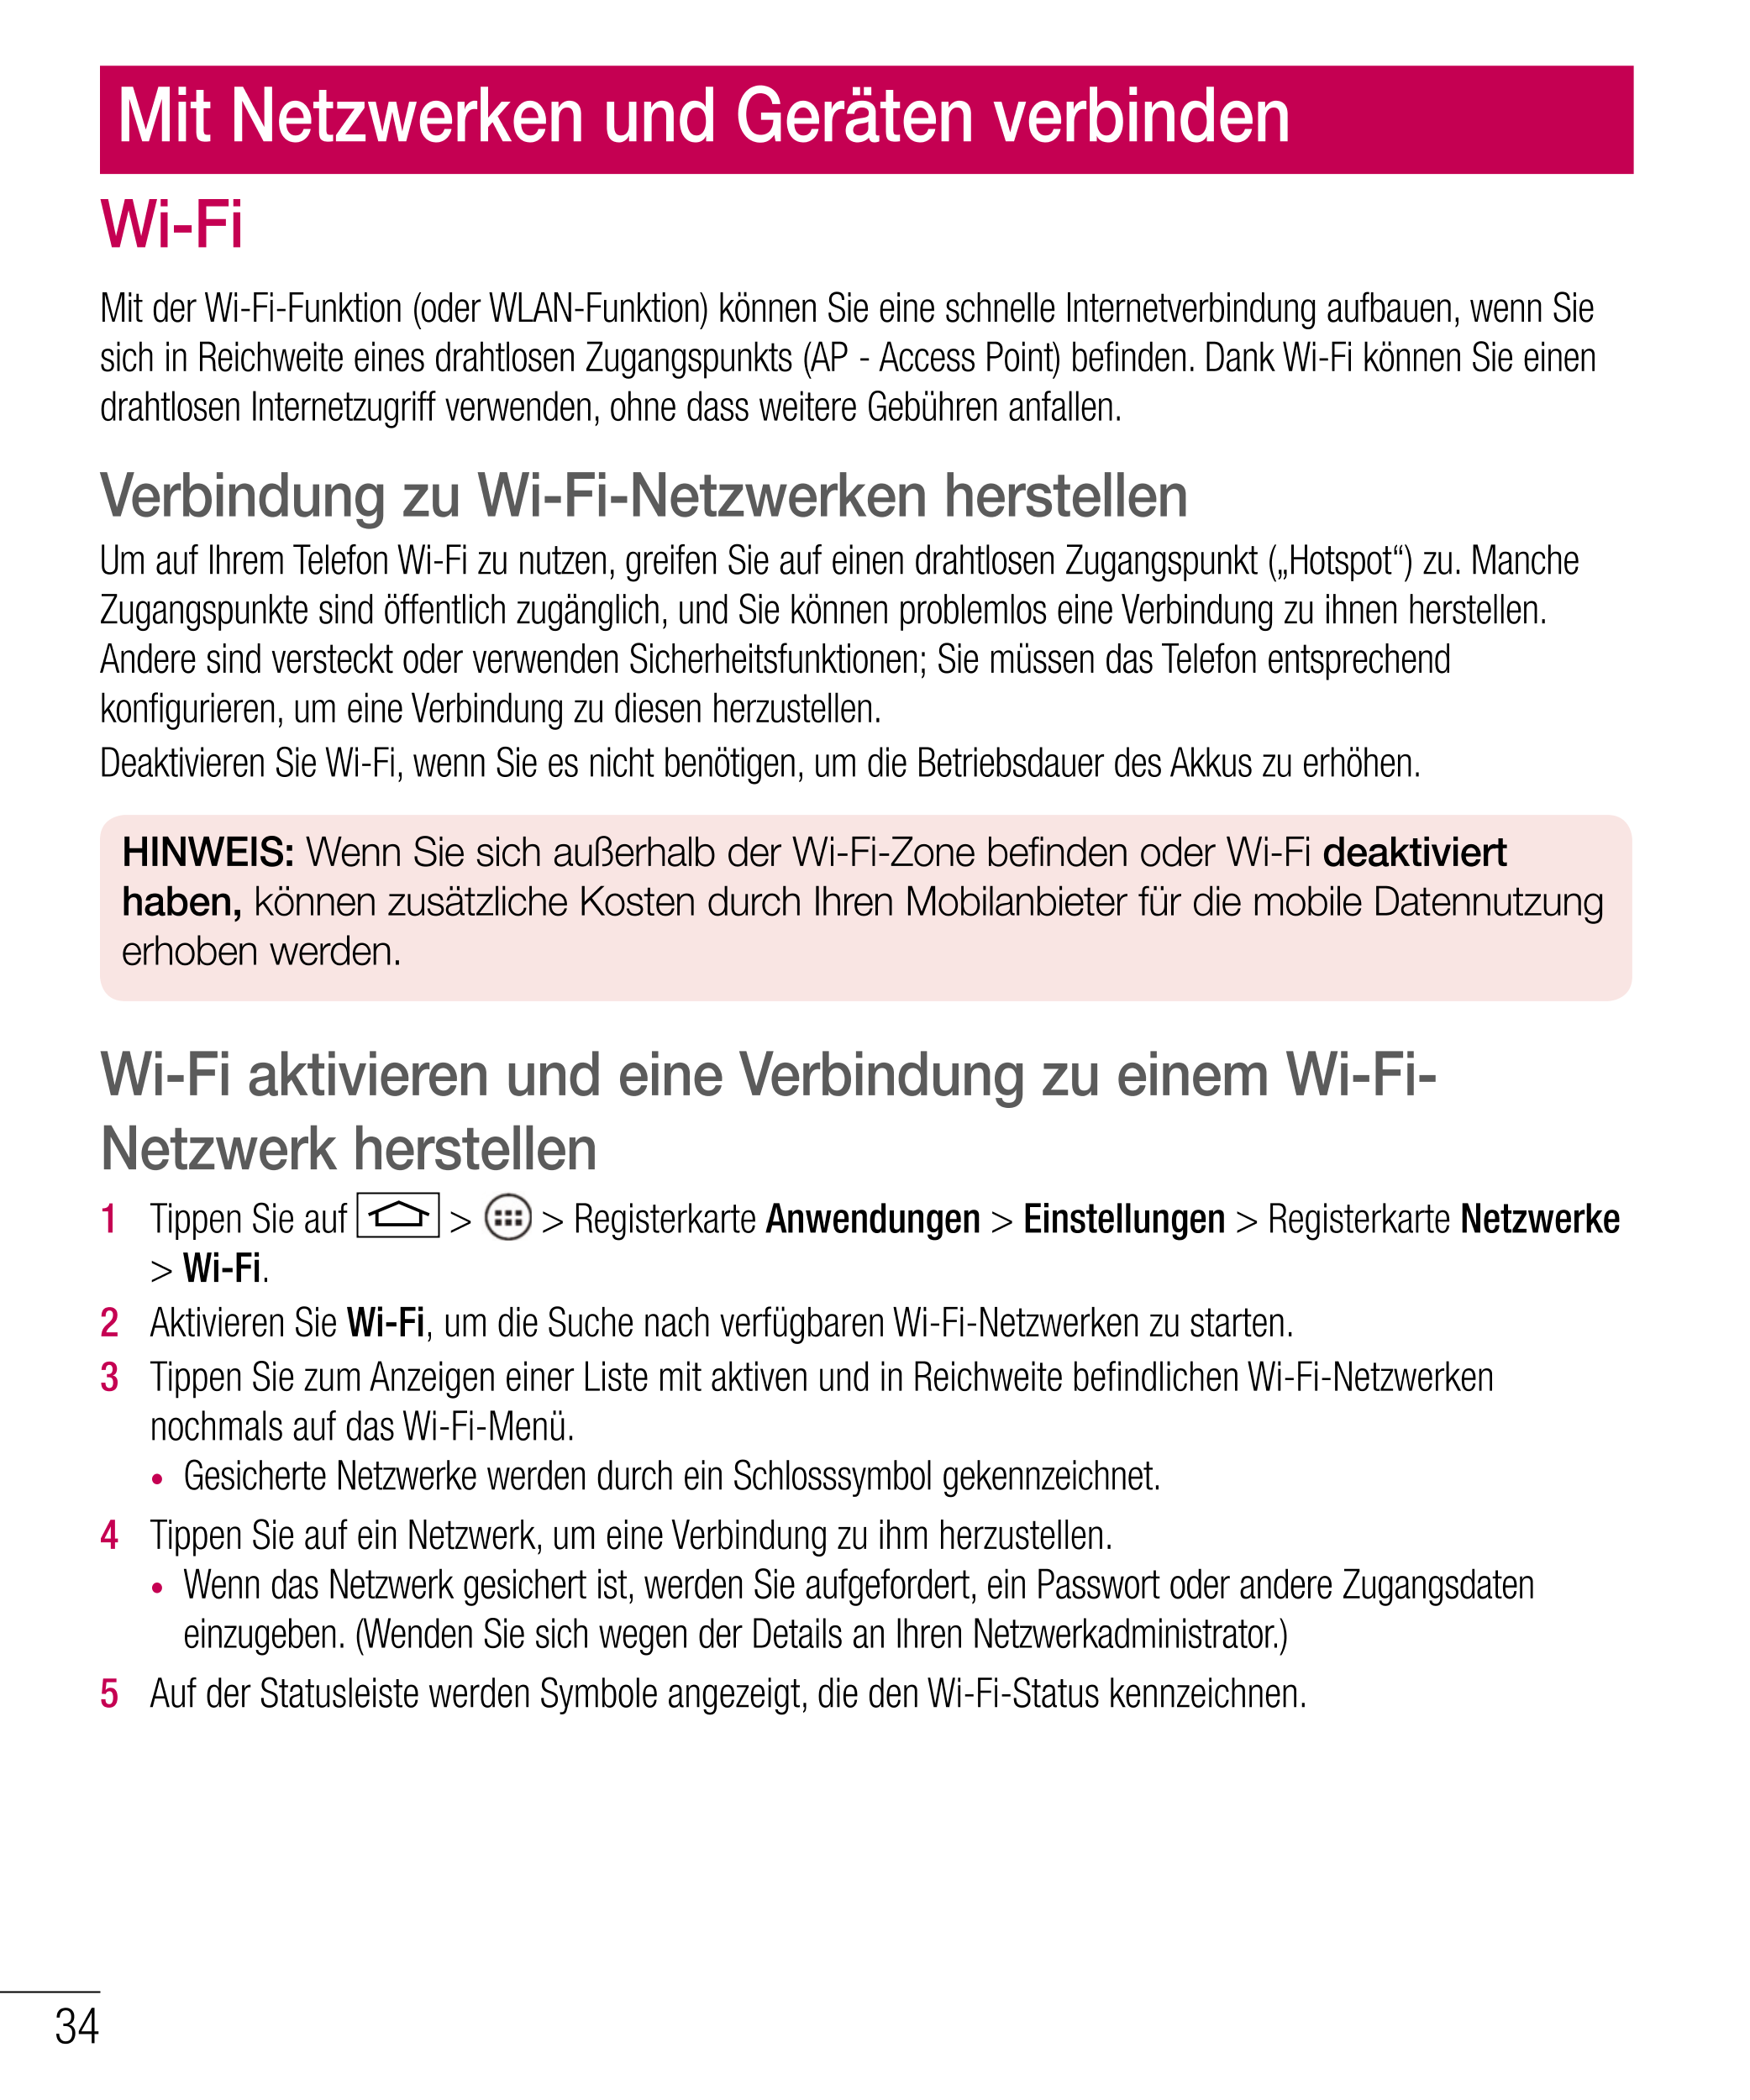 Mit Netzwerken und Geräten verbinden
Wi-Fi
Mit der Wi-Fi-Funktion (oder WLAN-Funktion) können Sie eine schnelle Internetverbindu